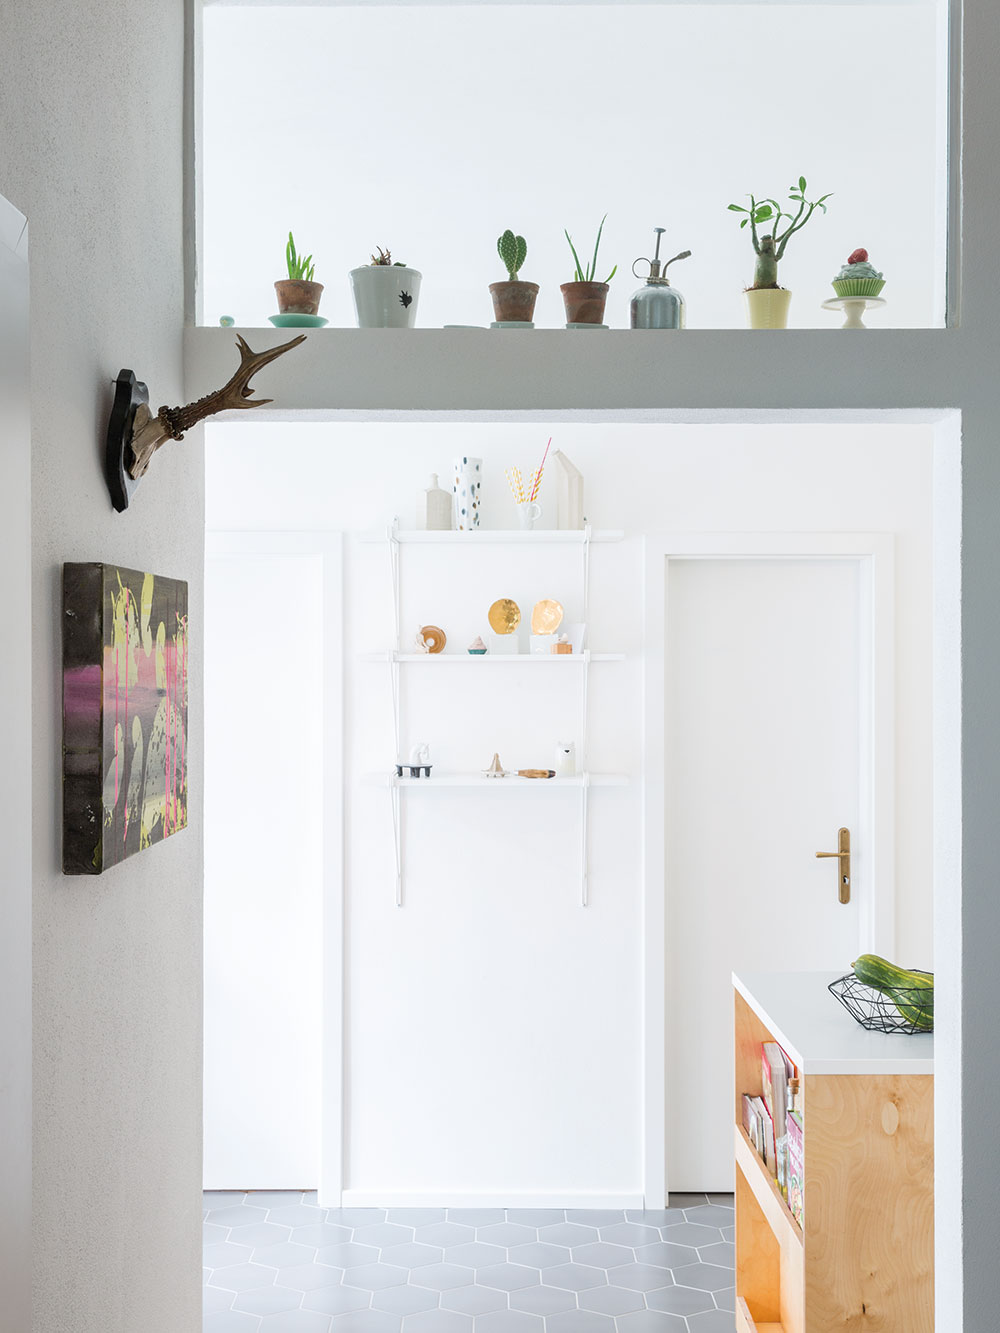 V otevřeném průhledu z obývacího pokoje do kuchyně dominuje bílá barva a pokojové rostliny, které mají v bytě výborné podmínky. FOTO JURAJ STAROVECKÝ